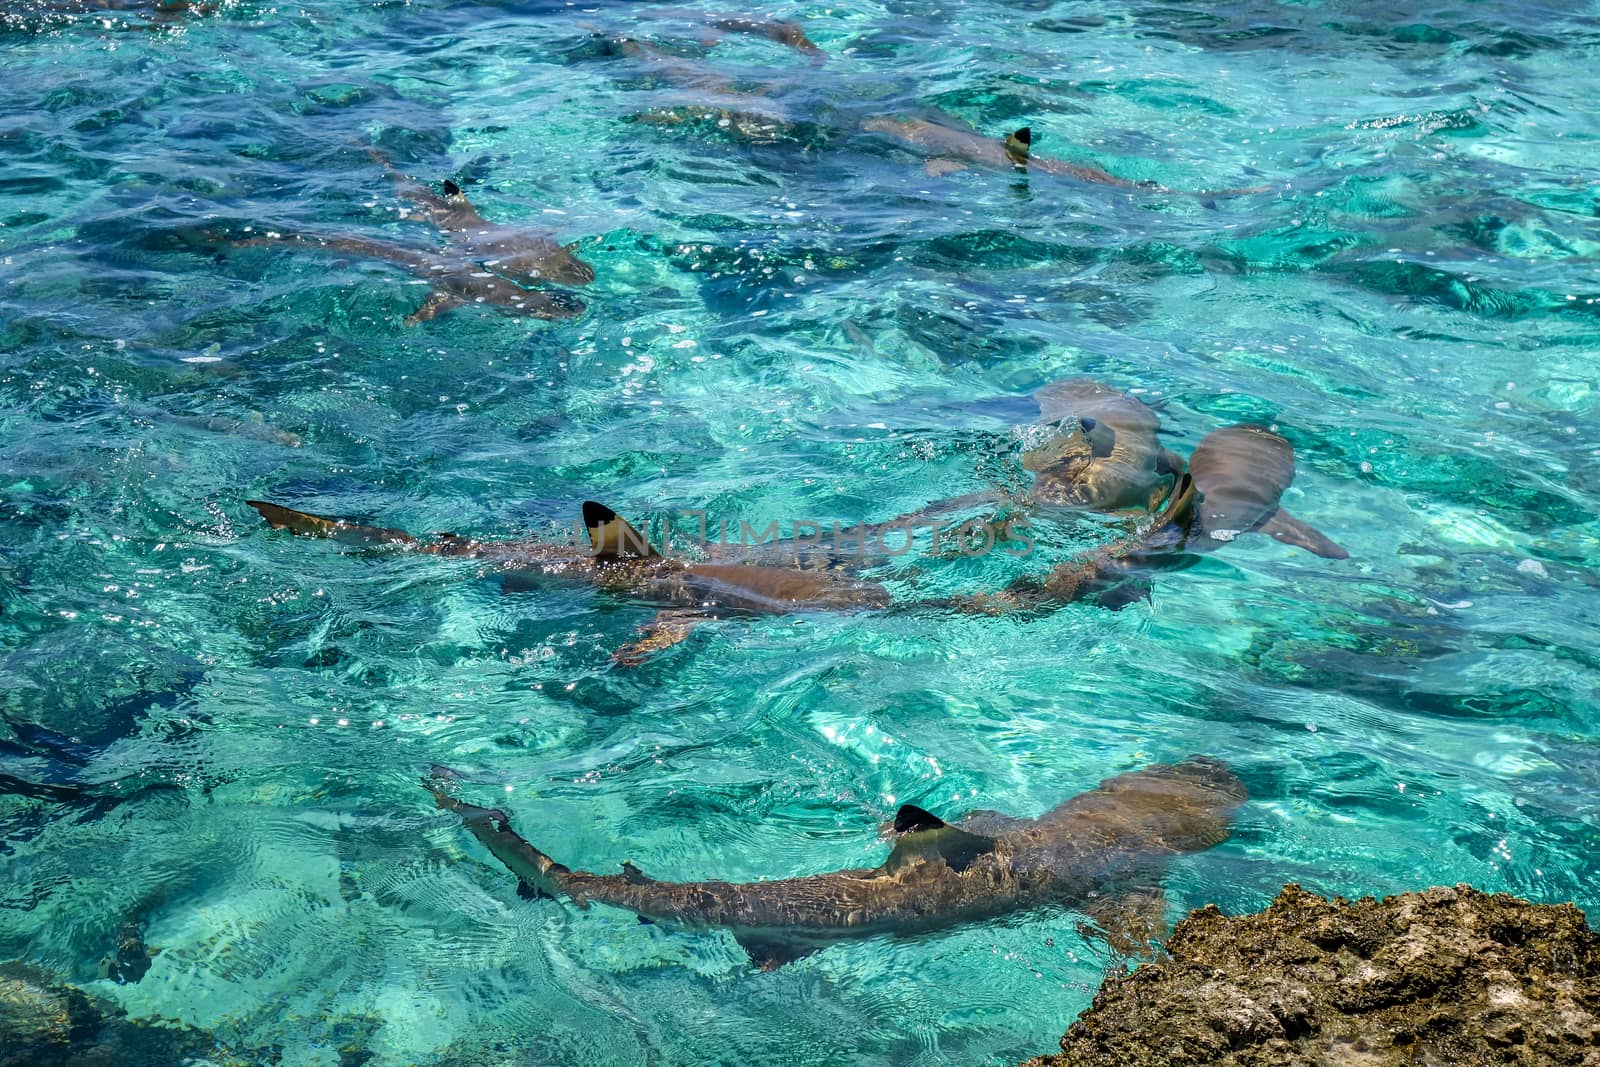 Blacktip sharks in moorea island lagoon. French Polynesia